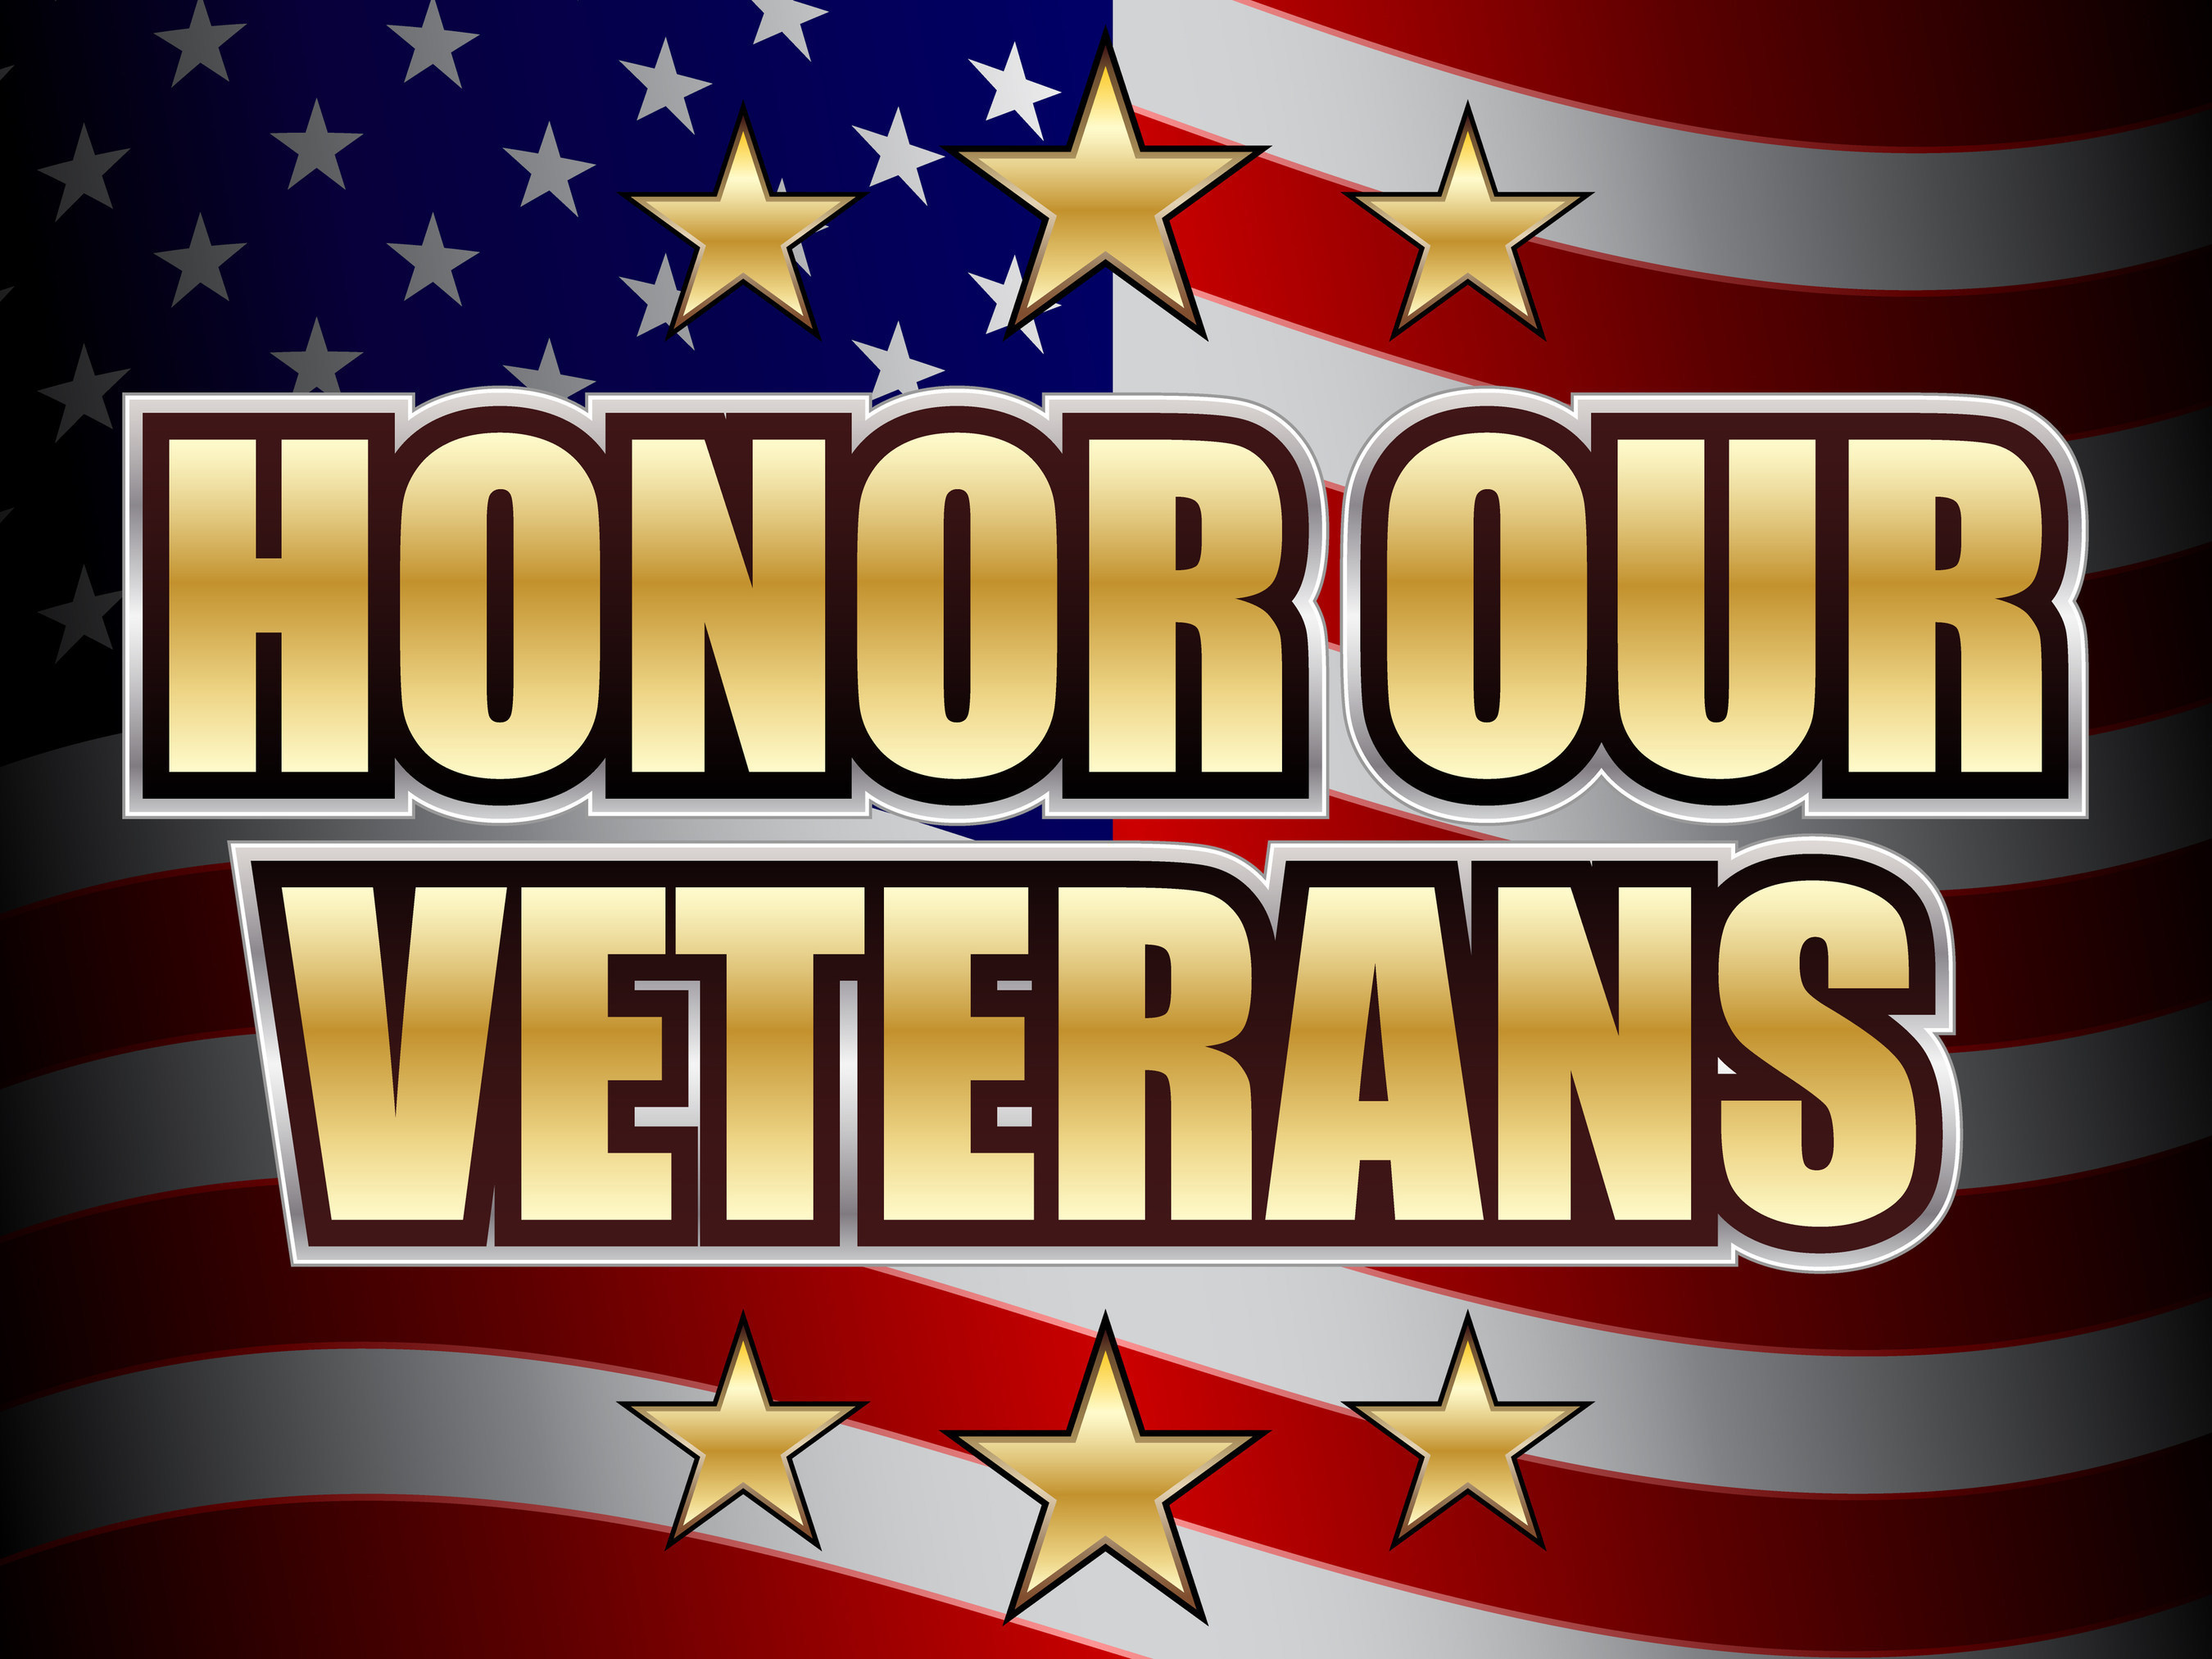 In honor of Veterans Day NEF Offers Professional Development Scholarships for Veterans